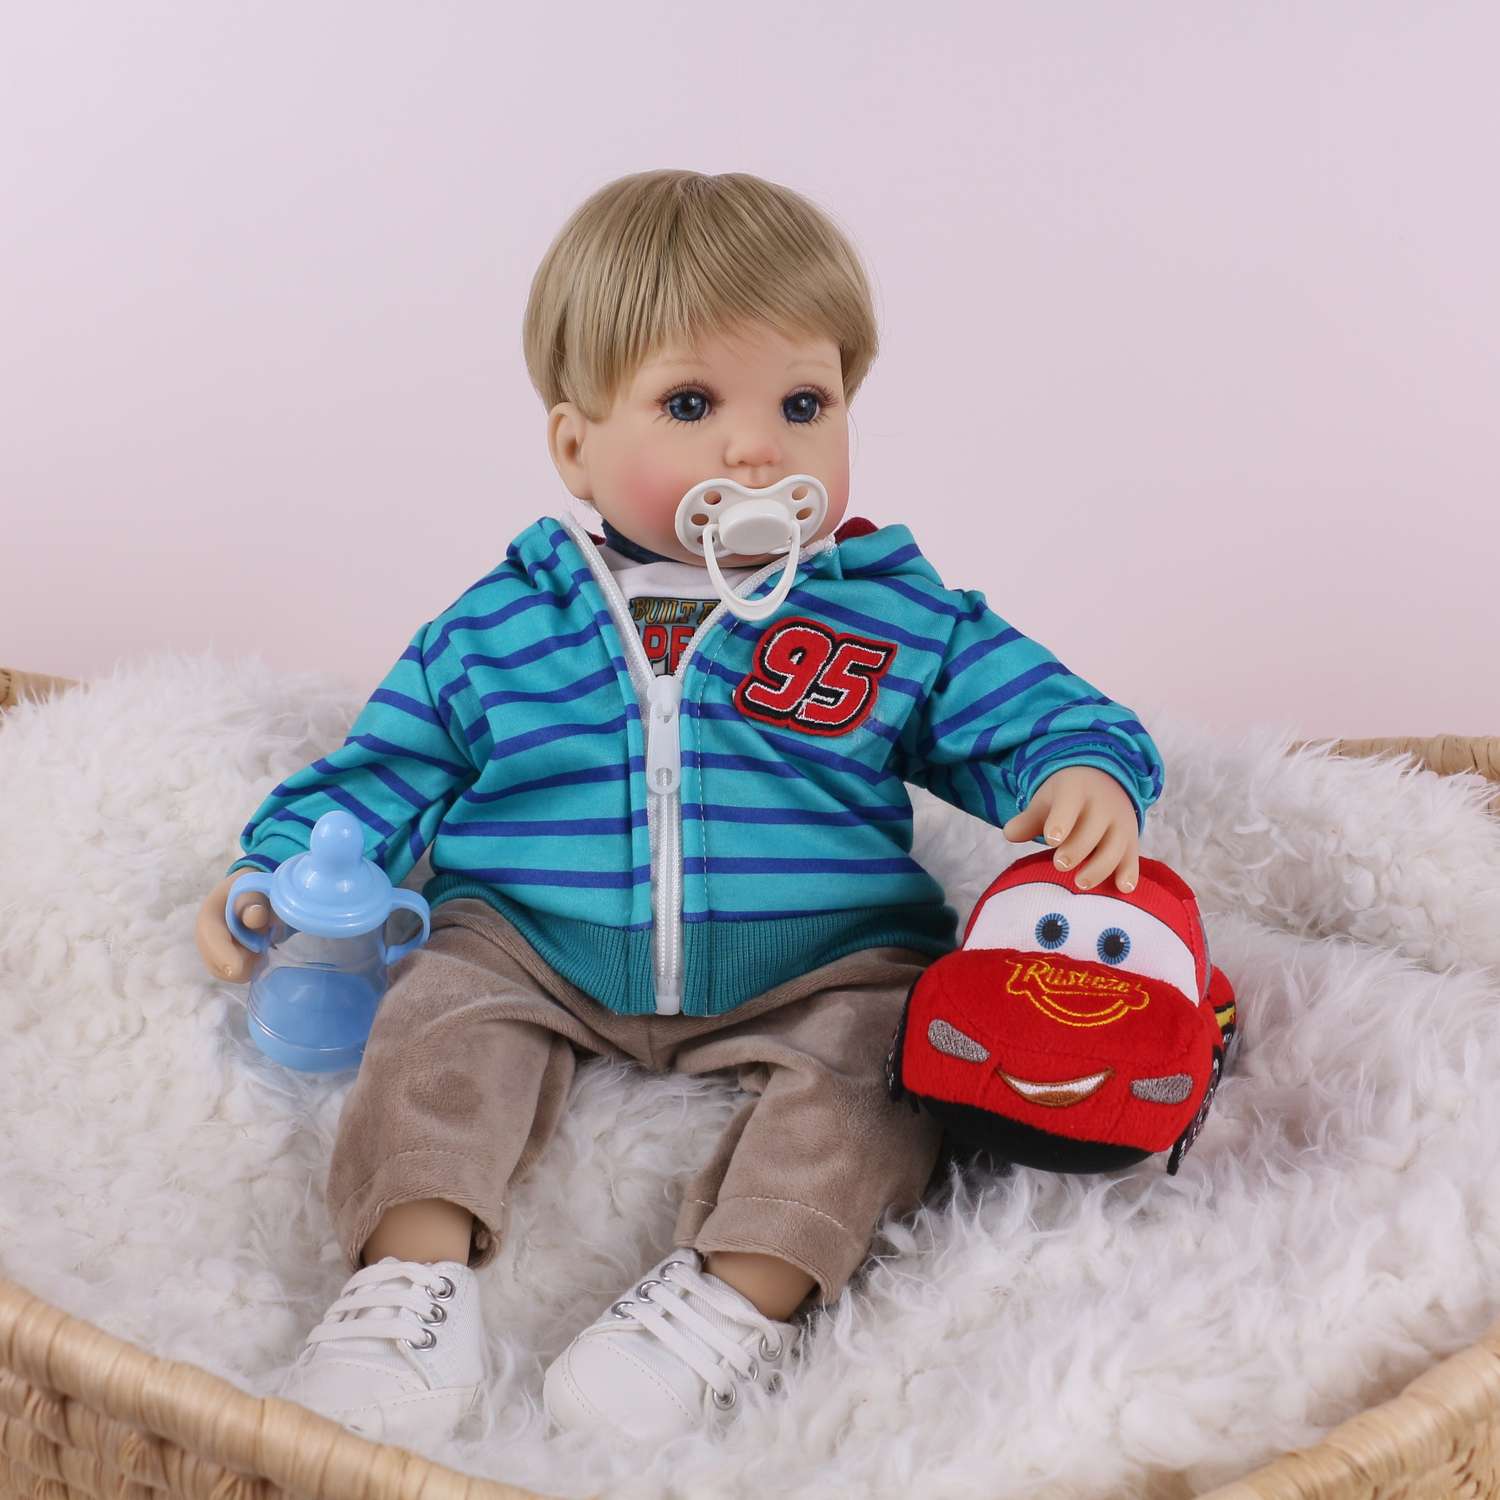 Кукла Реборн QA BABY Мишель мальчик большой пупс набор игрушки для девочки 42 см 45009 - фото 5